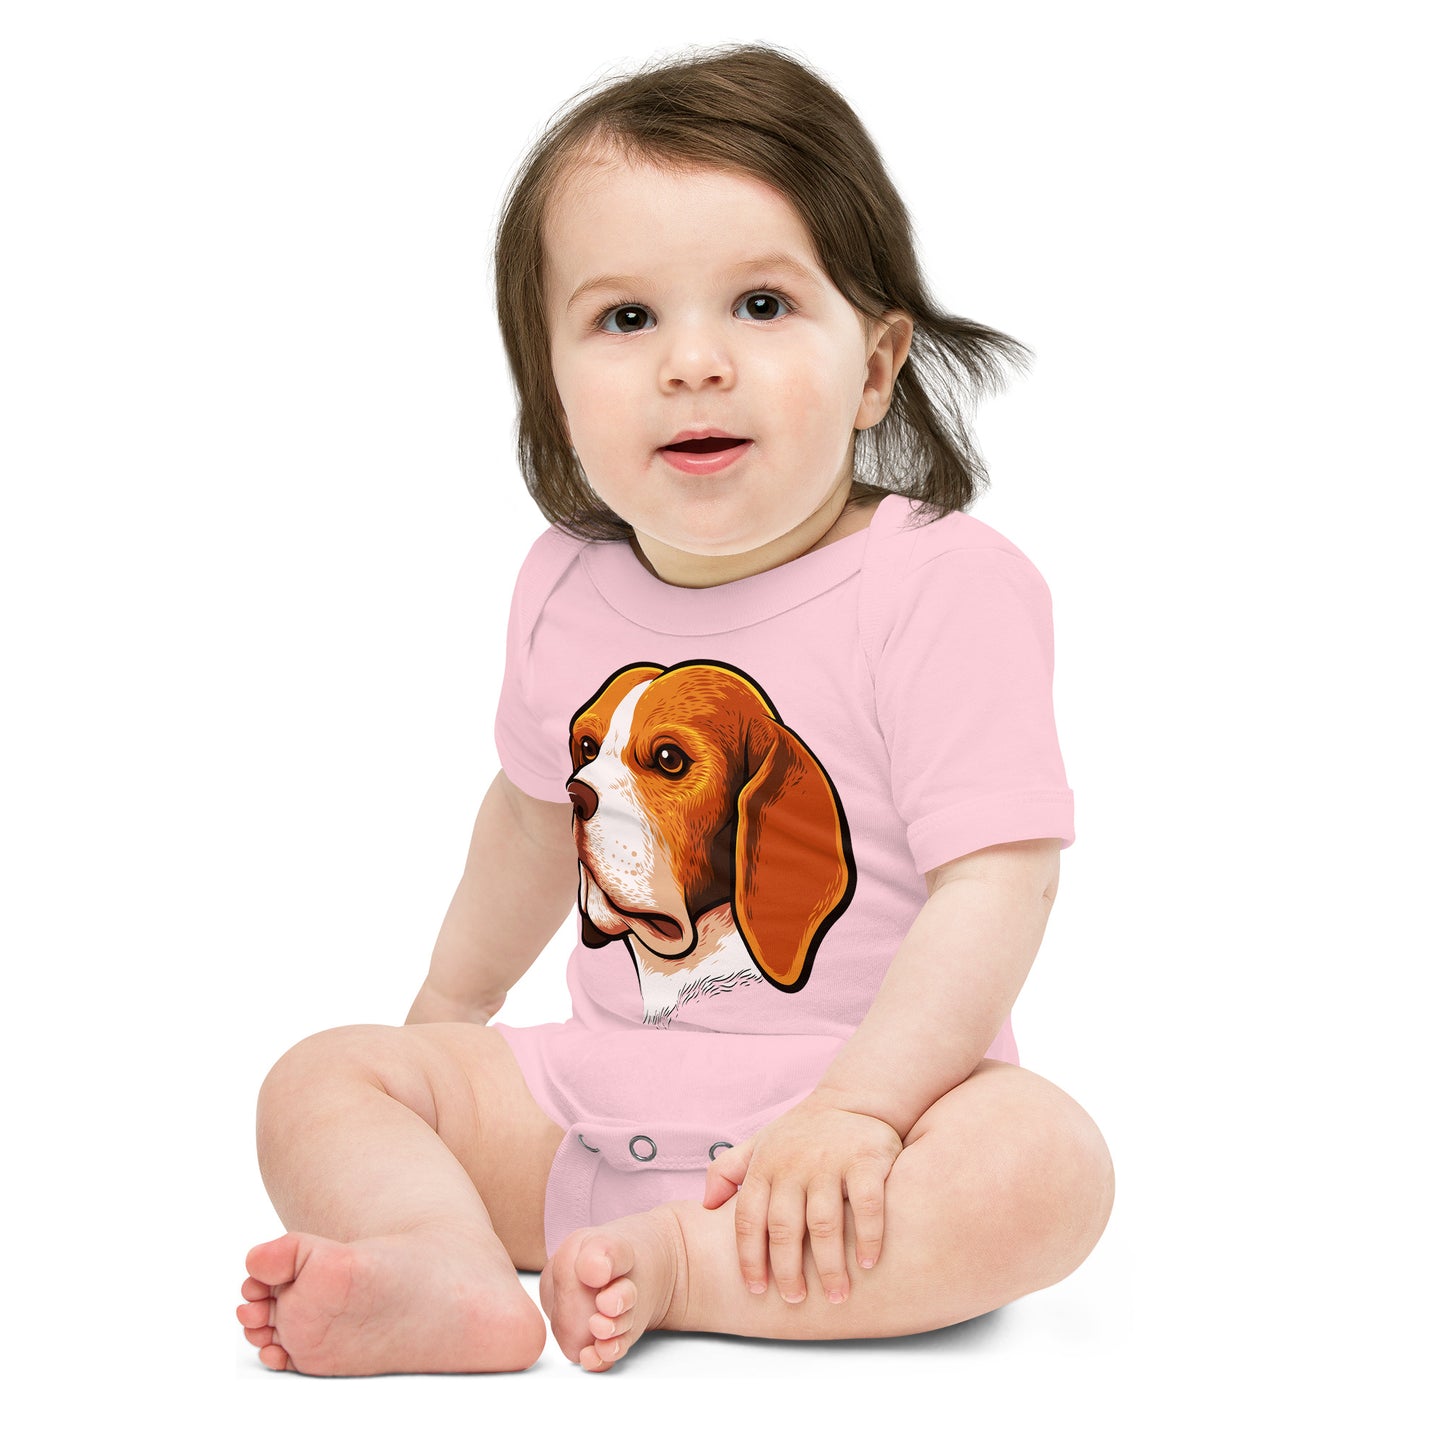 Beagle Dog Portrait Bodysuit, No. 0105